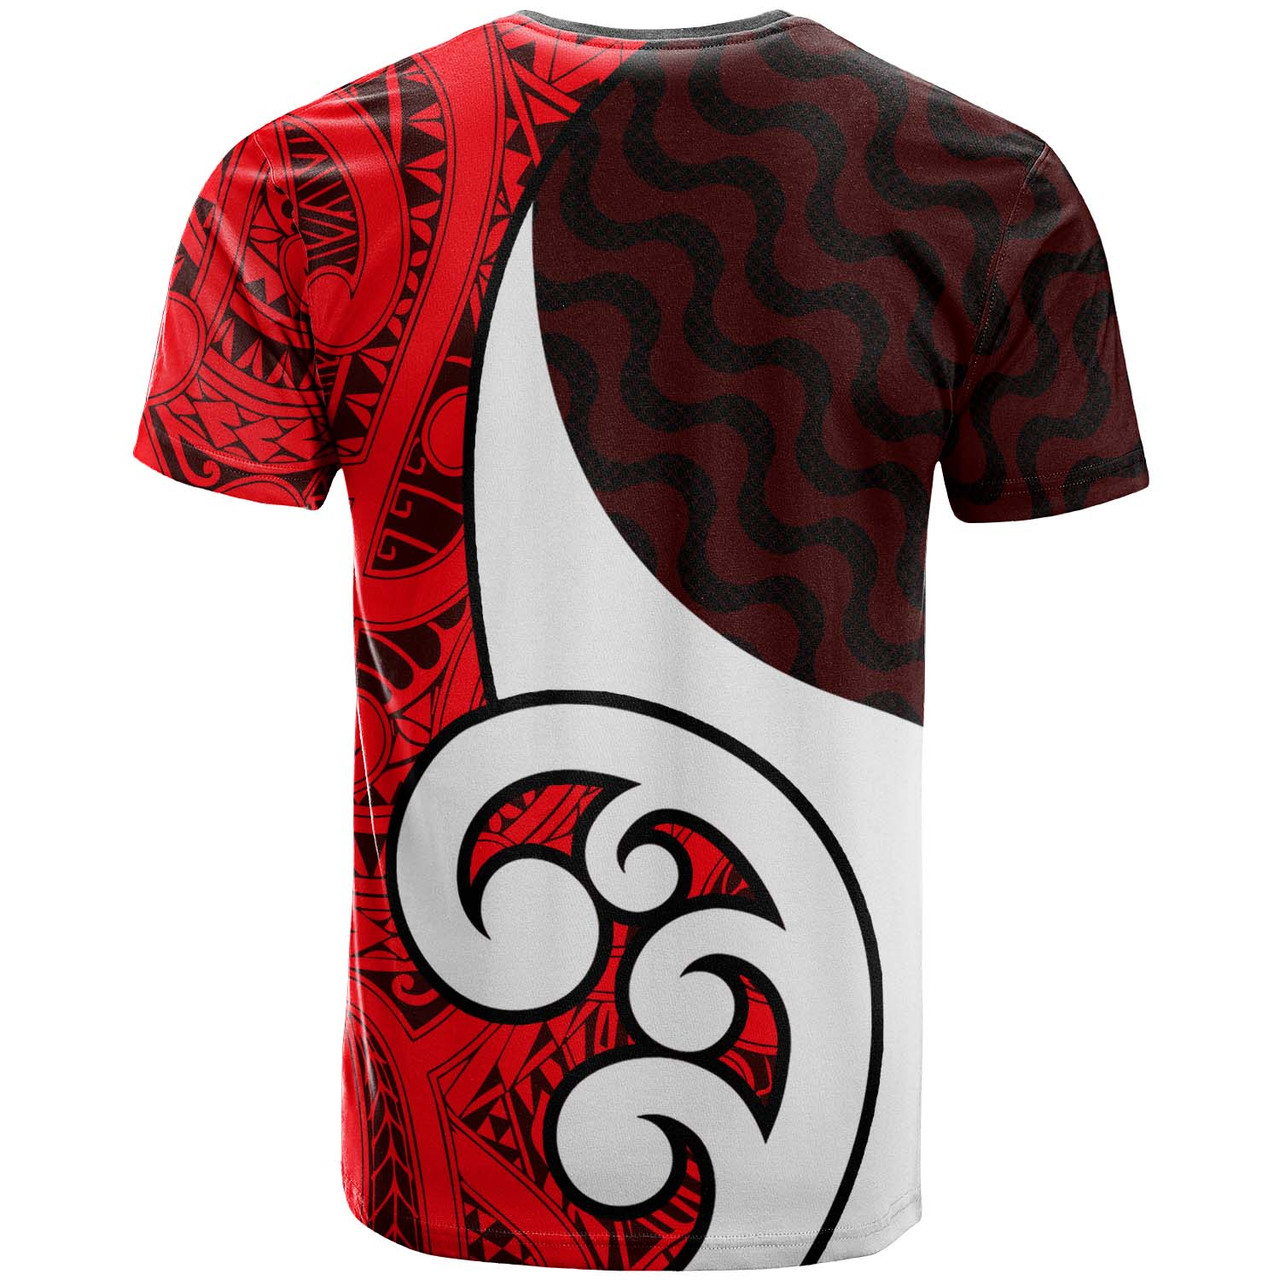 New Zealand T-shirt - Custom Flag of the United Tribes of New Zealand Waitangi Day